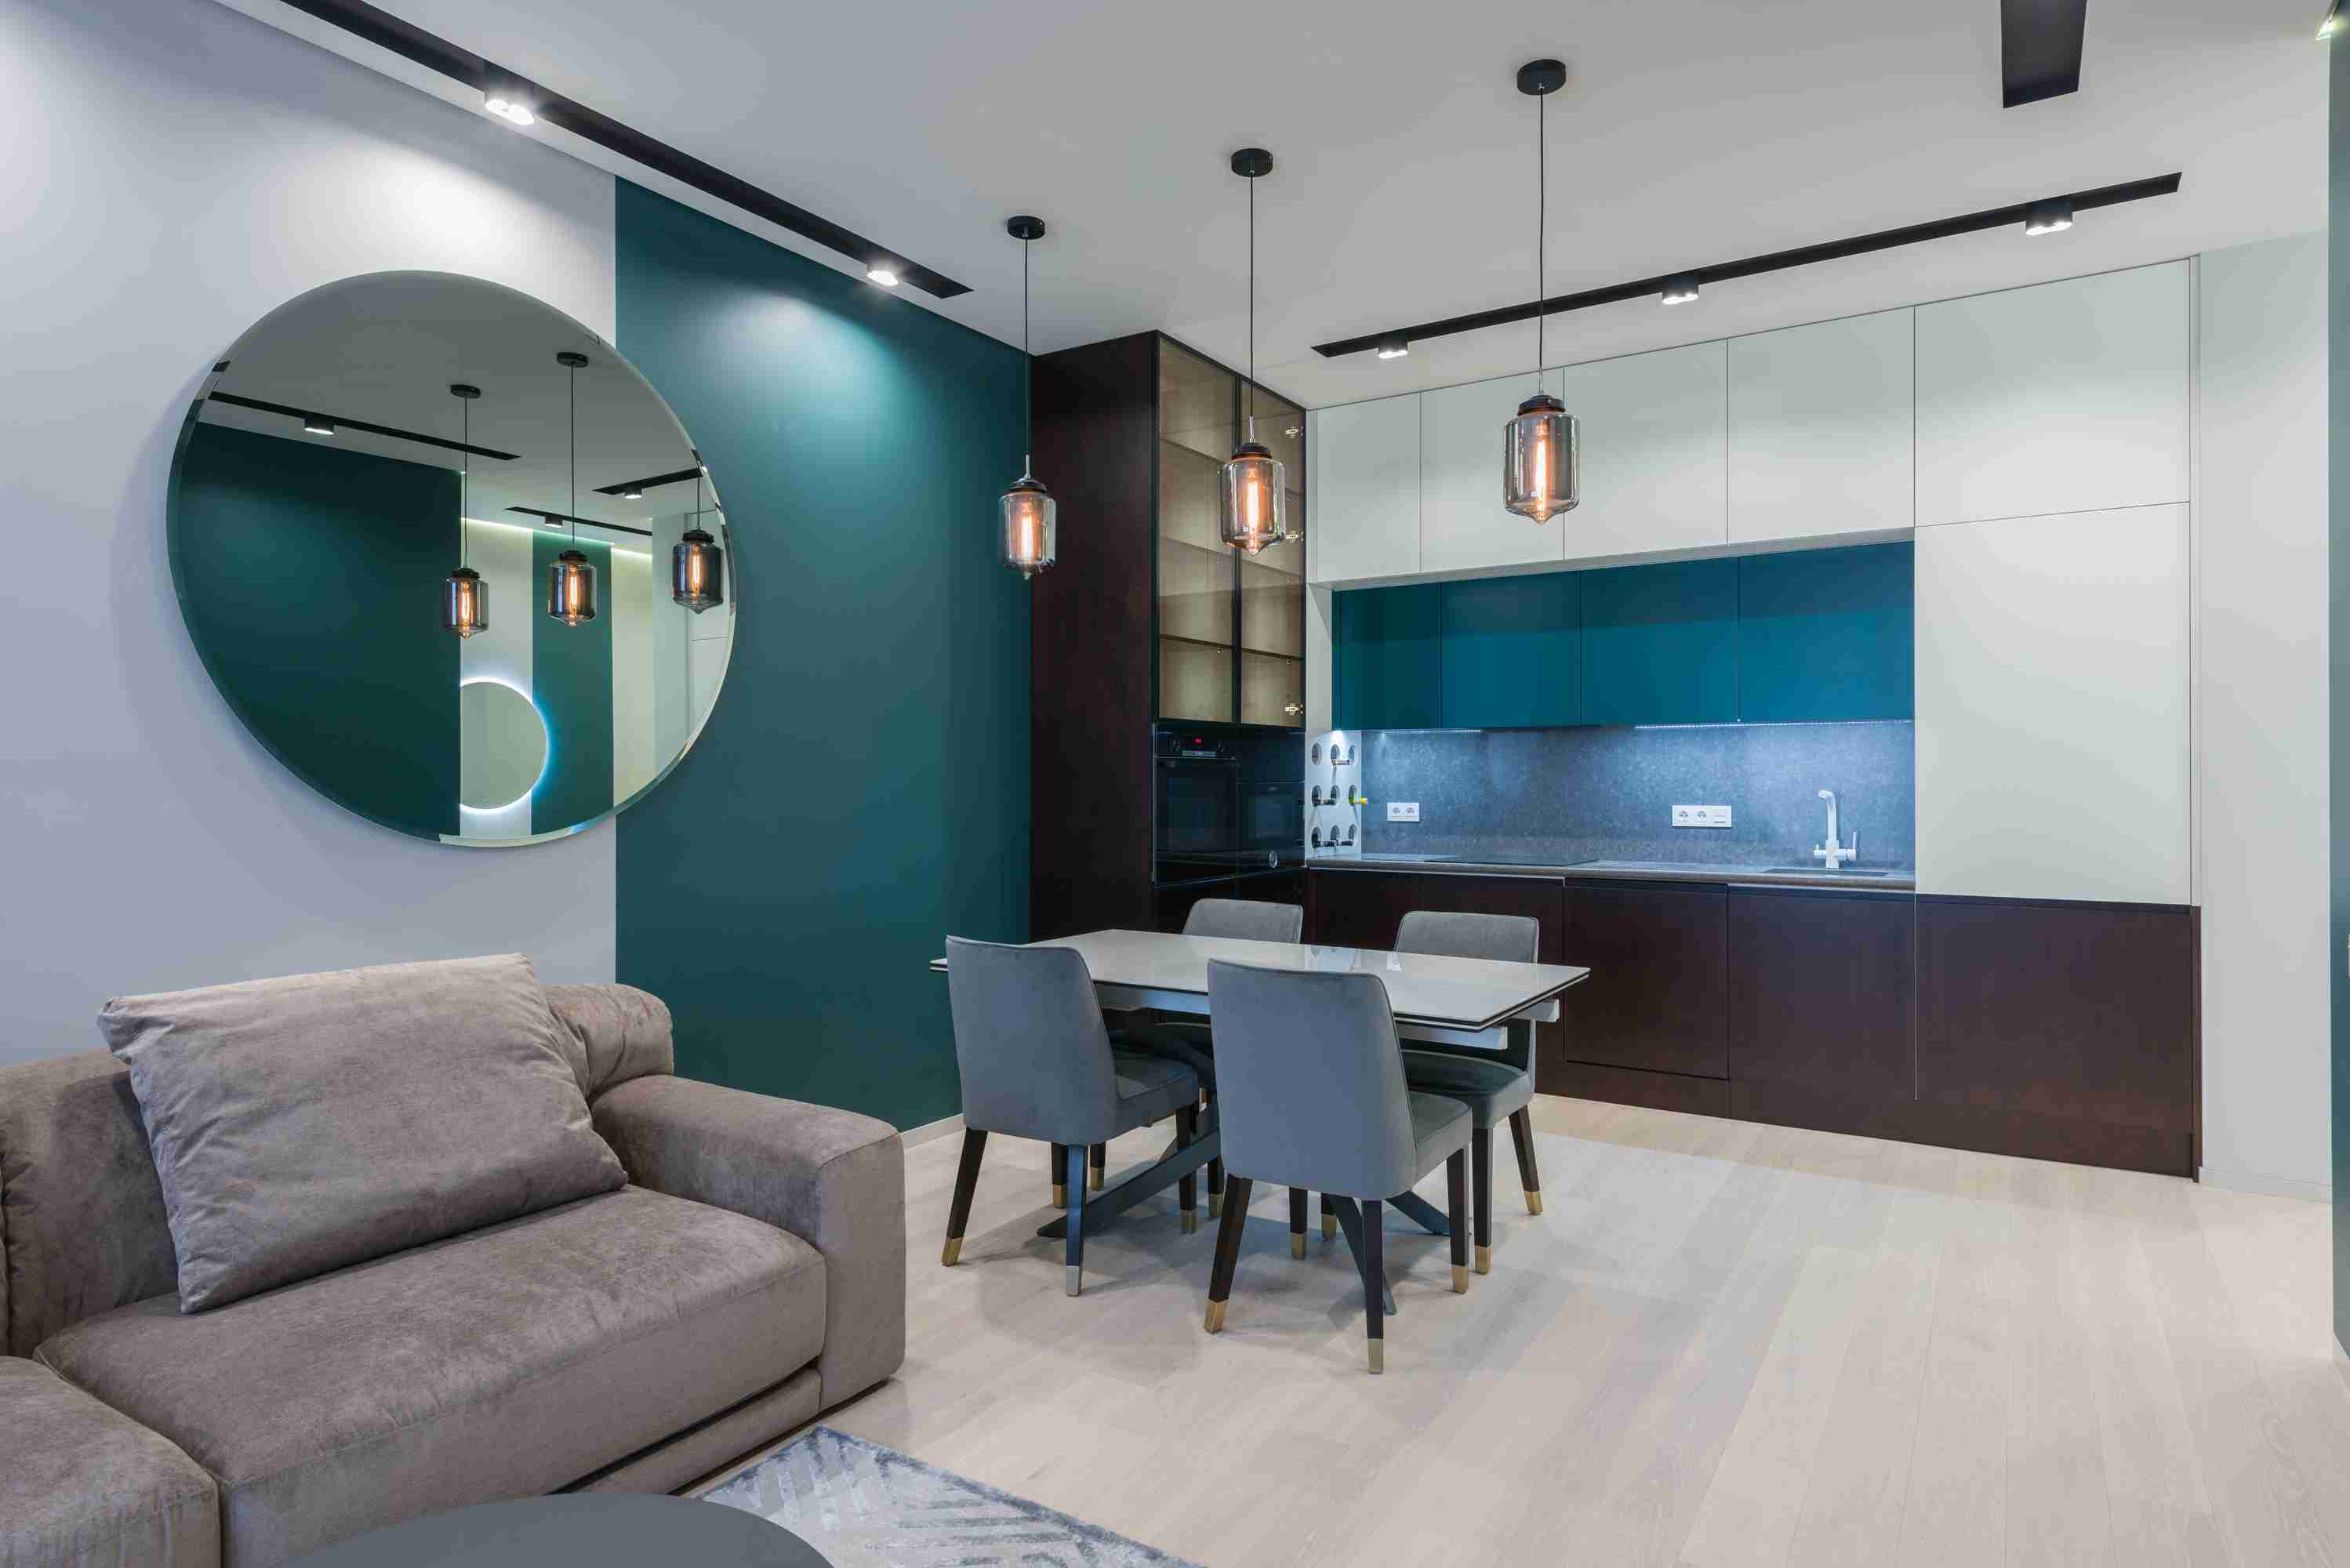 salon w przytulnym klimacie z fotelem welurowym / Salon loft w stylu industrialnym - aranżacje 2021